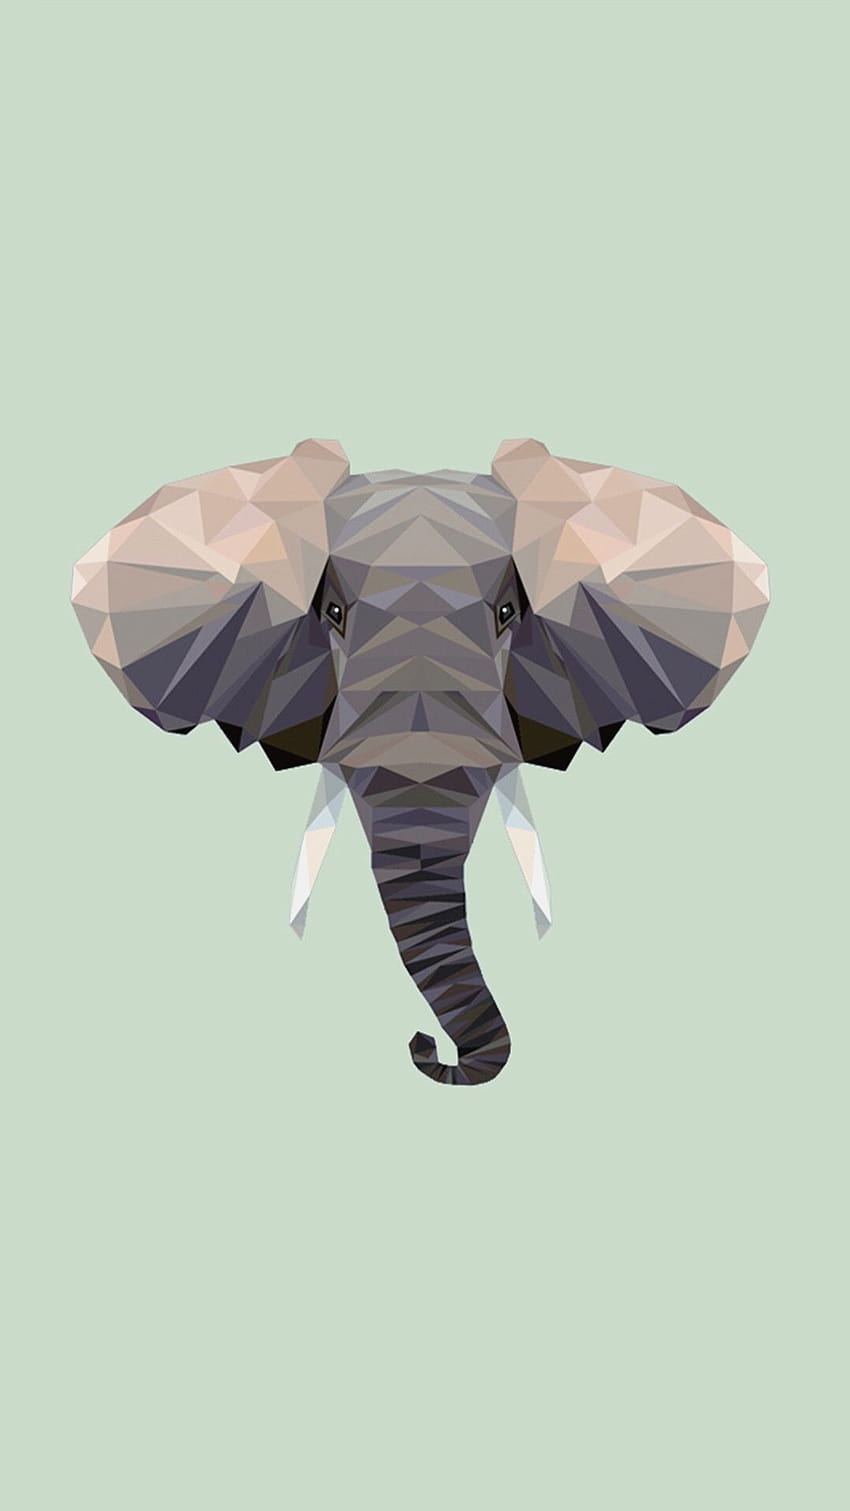  Elefant Hintergrundbild 850x1511. Elephant iPhone Background